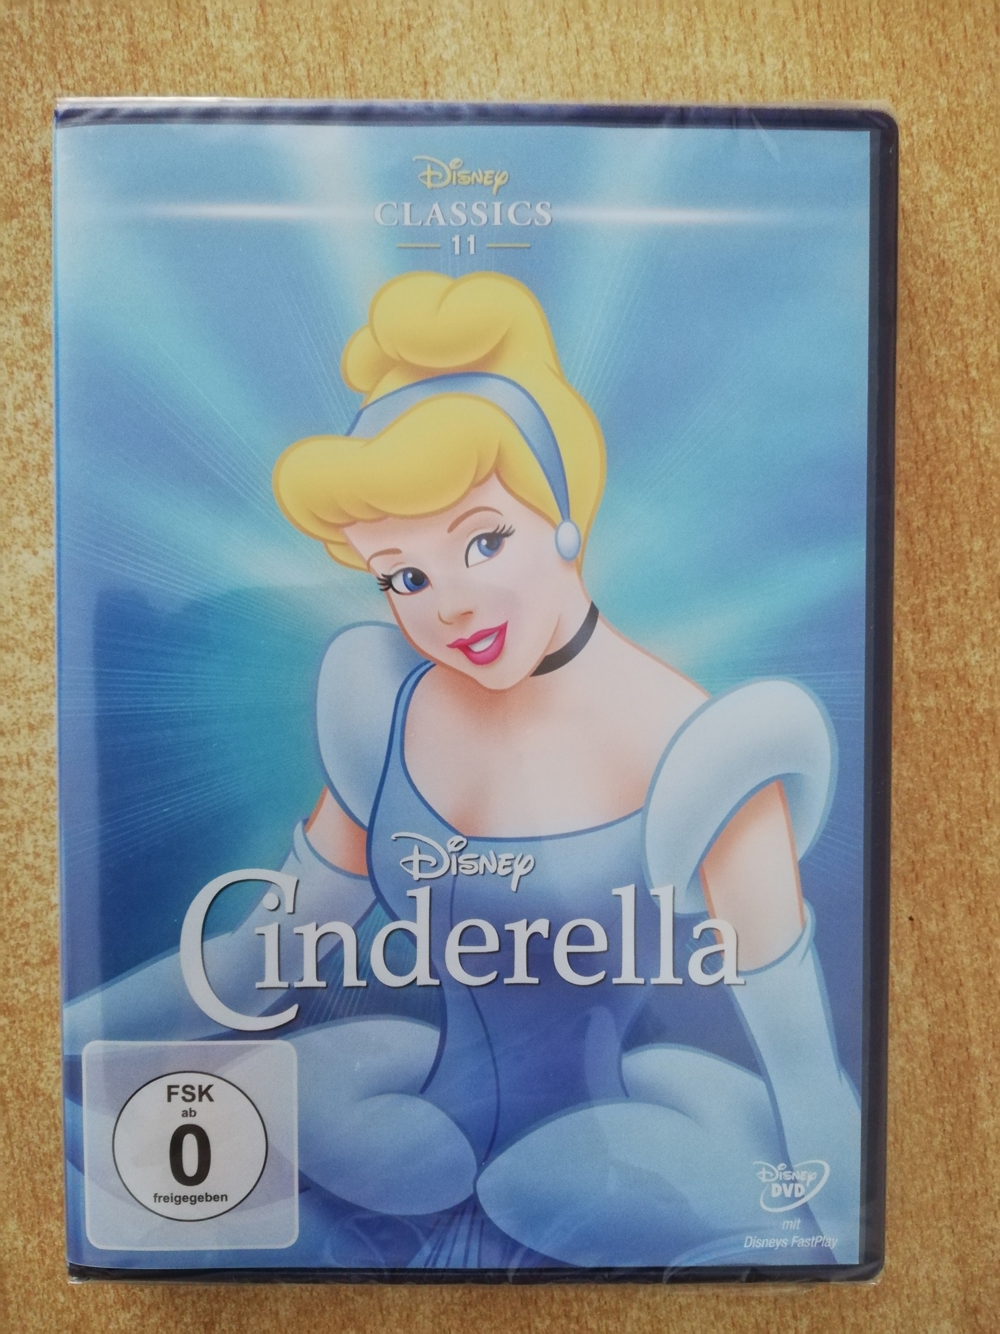 Neue DVD "Cinderella"